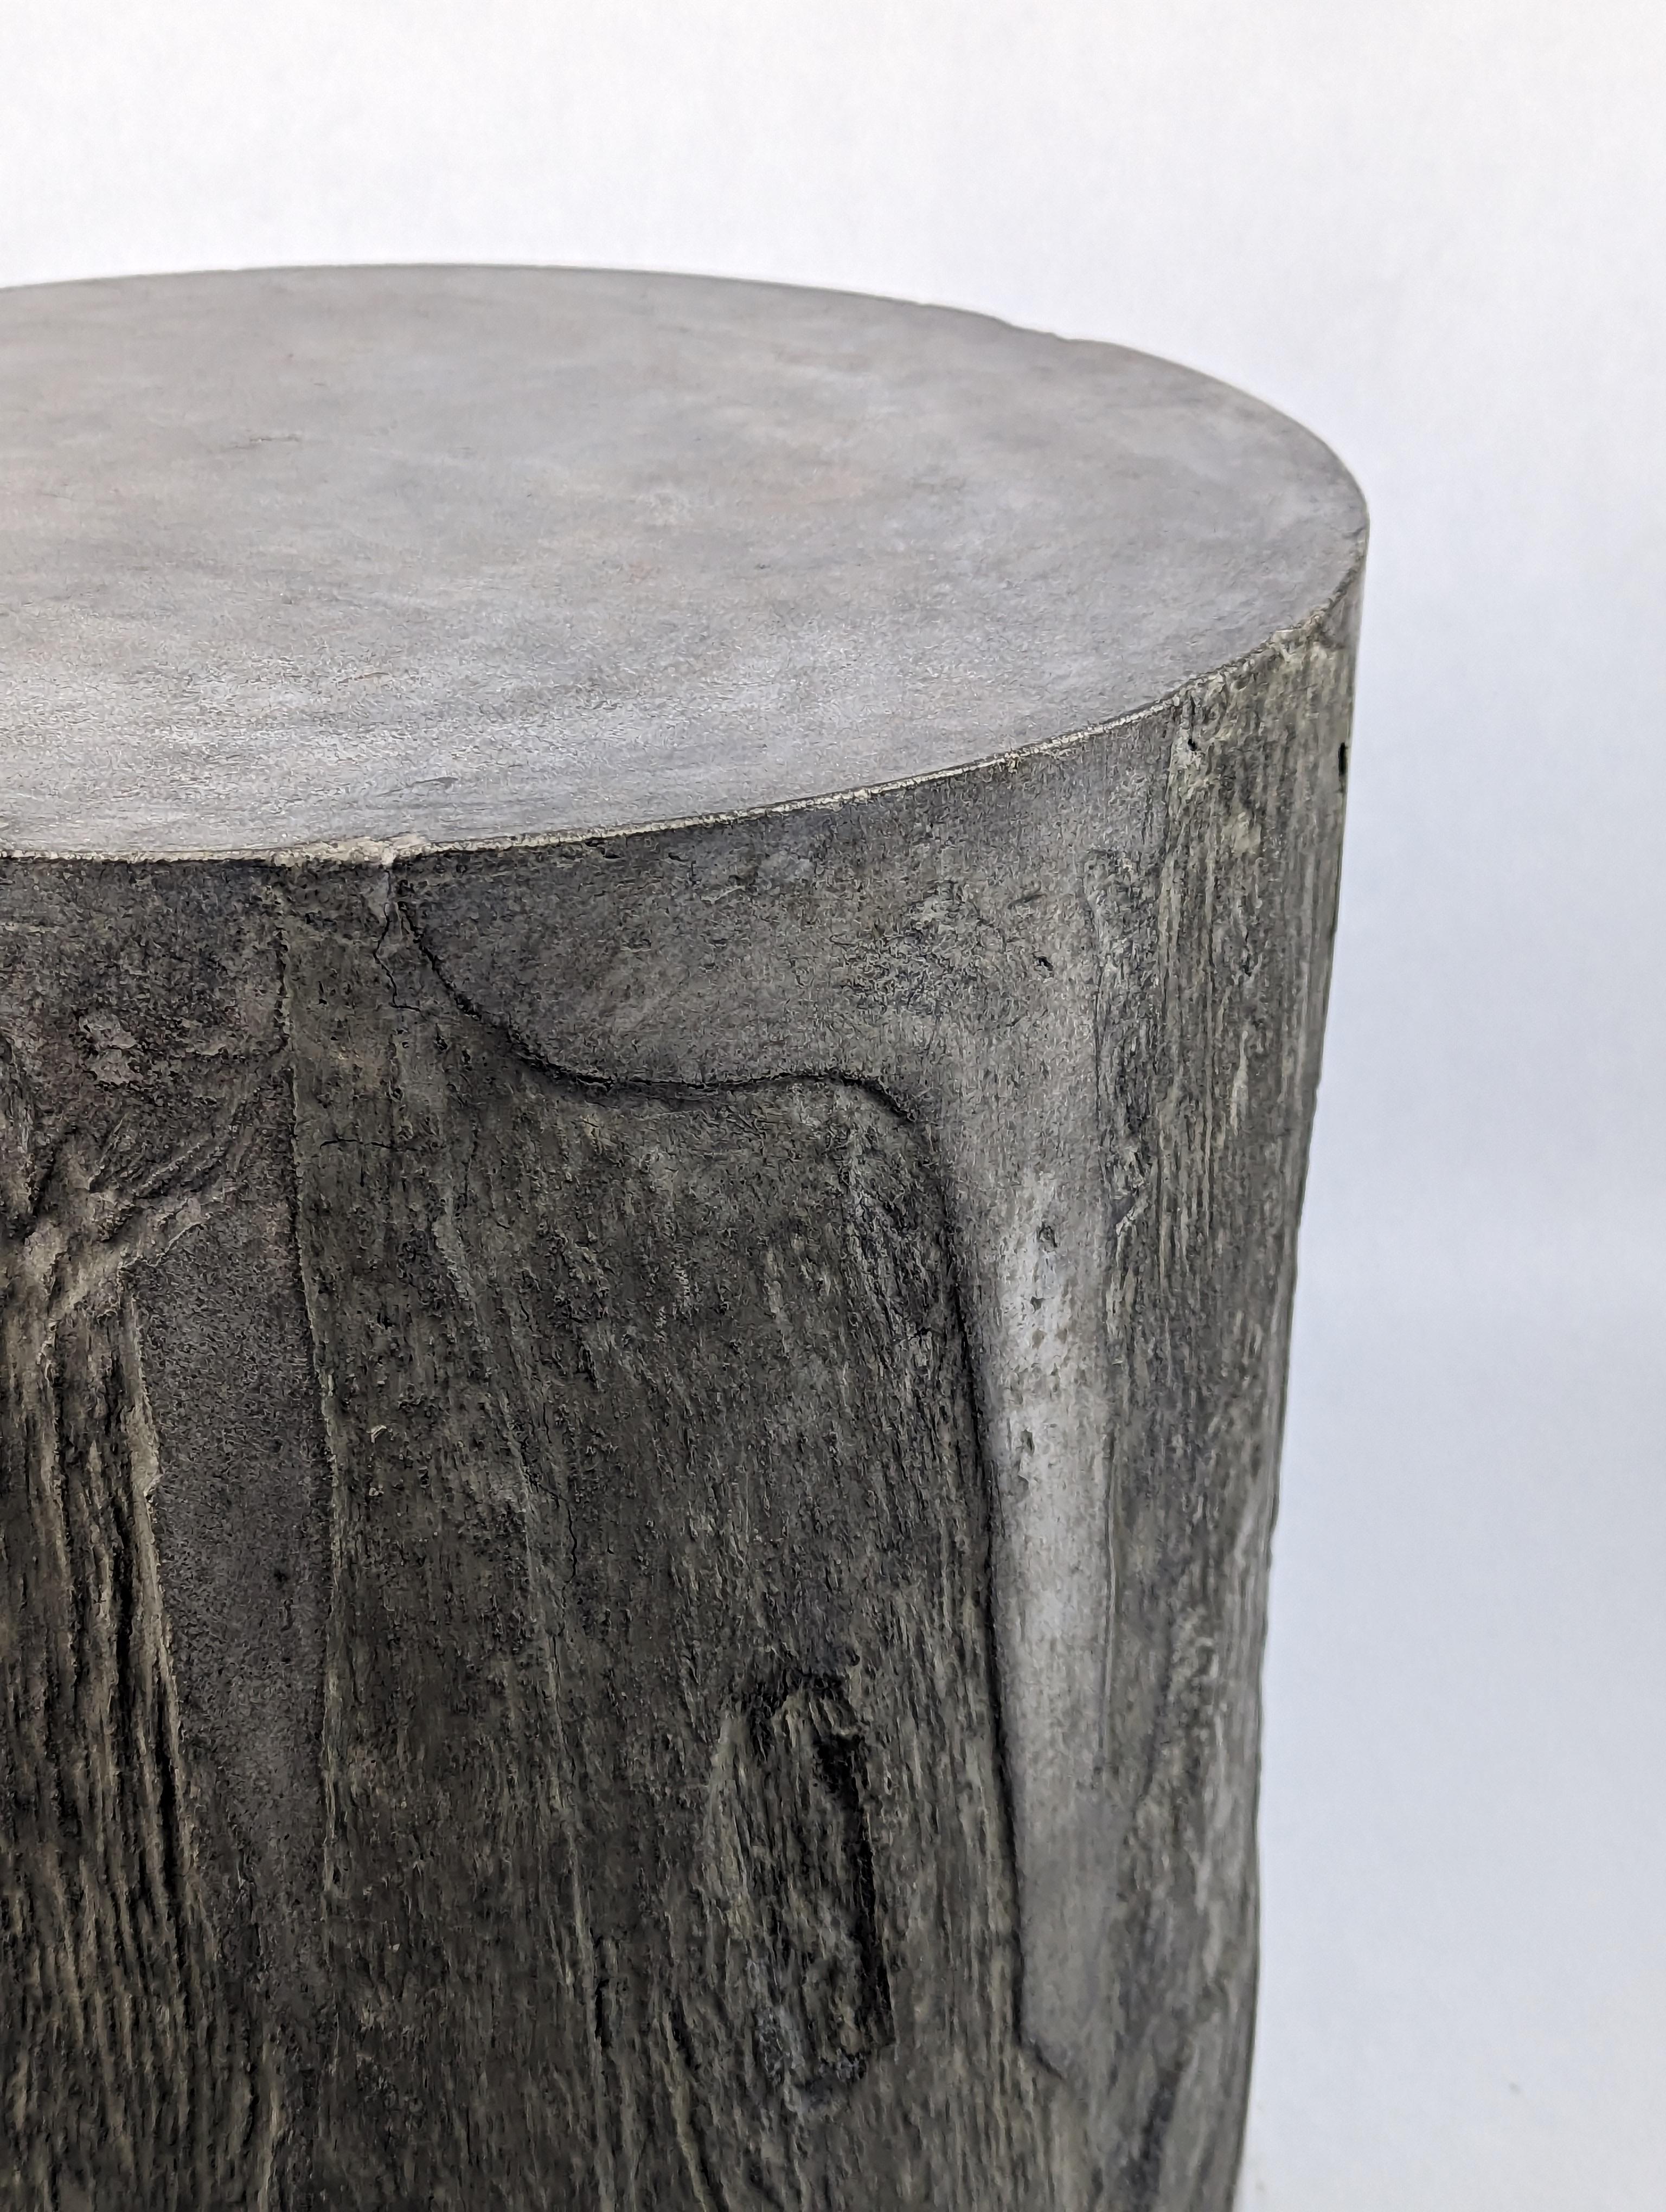 Cast Dark Grey Concrete Stool with Stone or Cliff-like Texture, 'Vertigo'